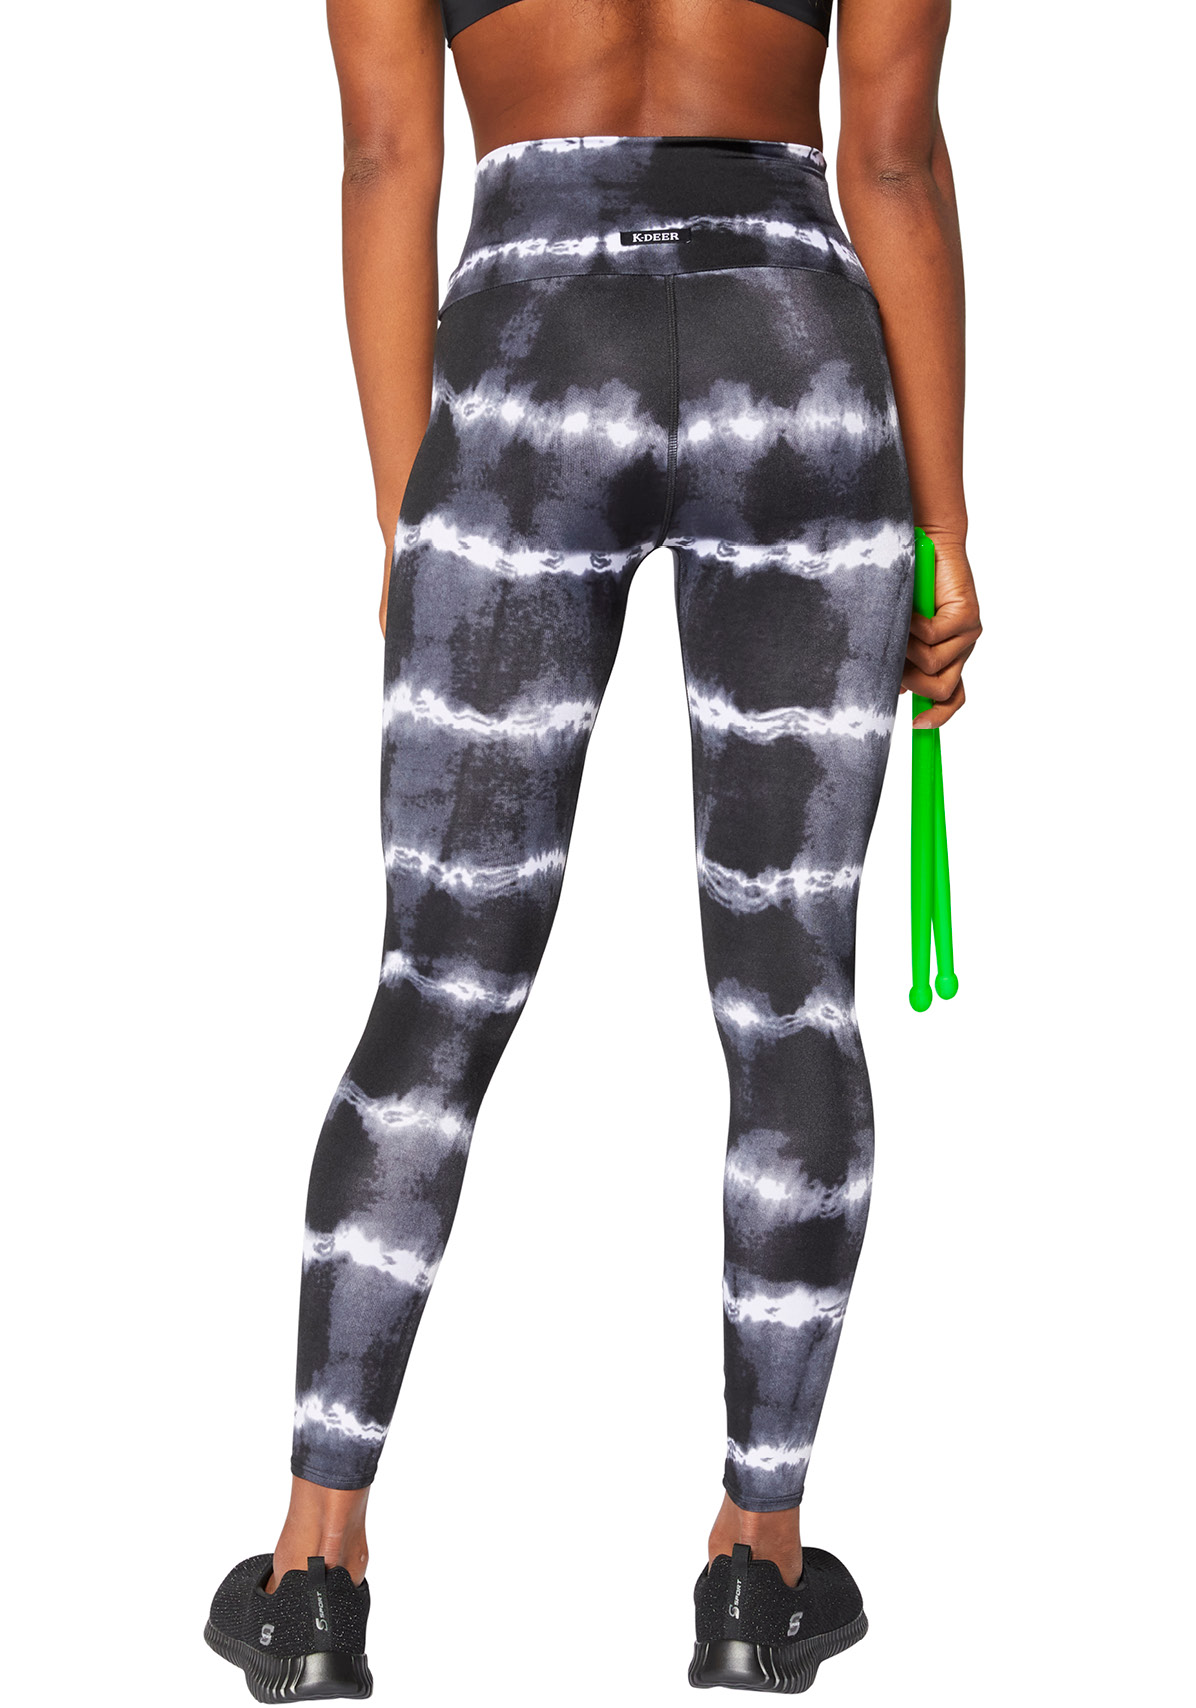 K-Deer Tie Dye Legging • Shop - POUND: Rockout. Workout.®